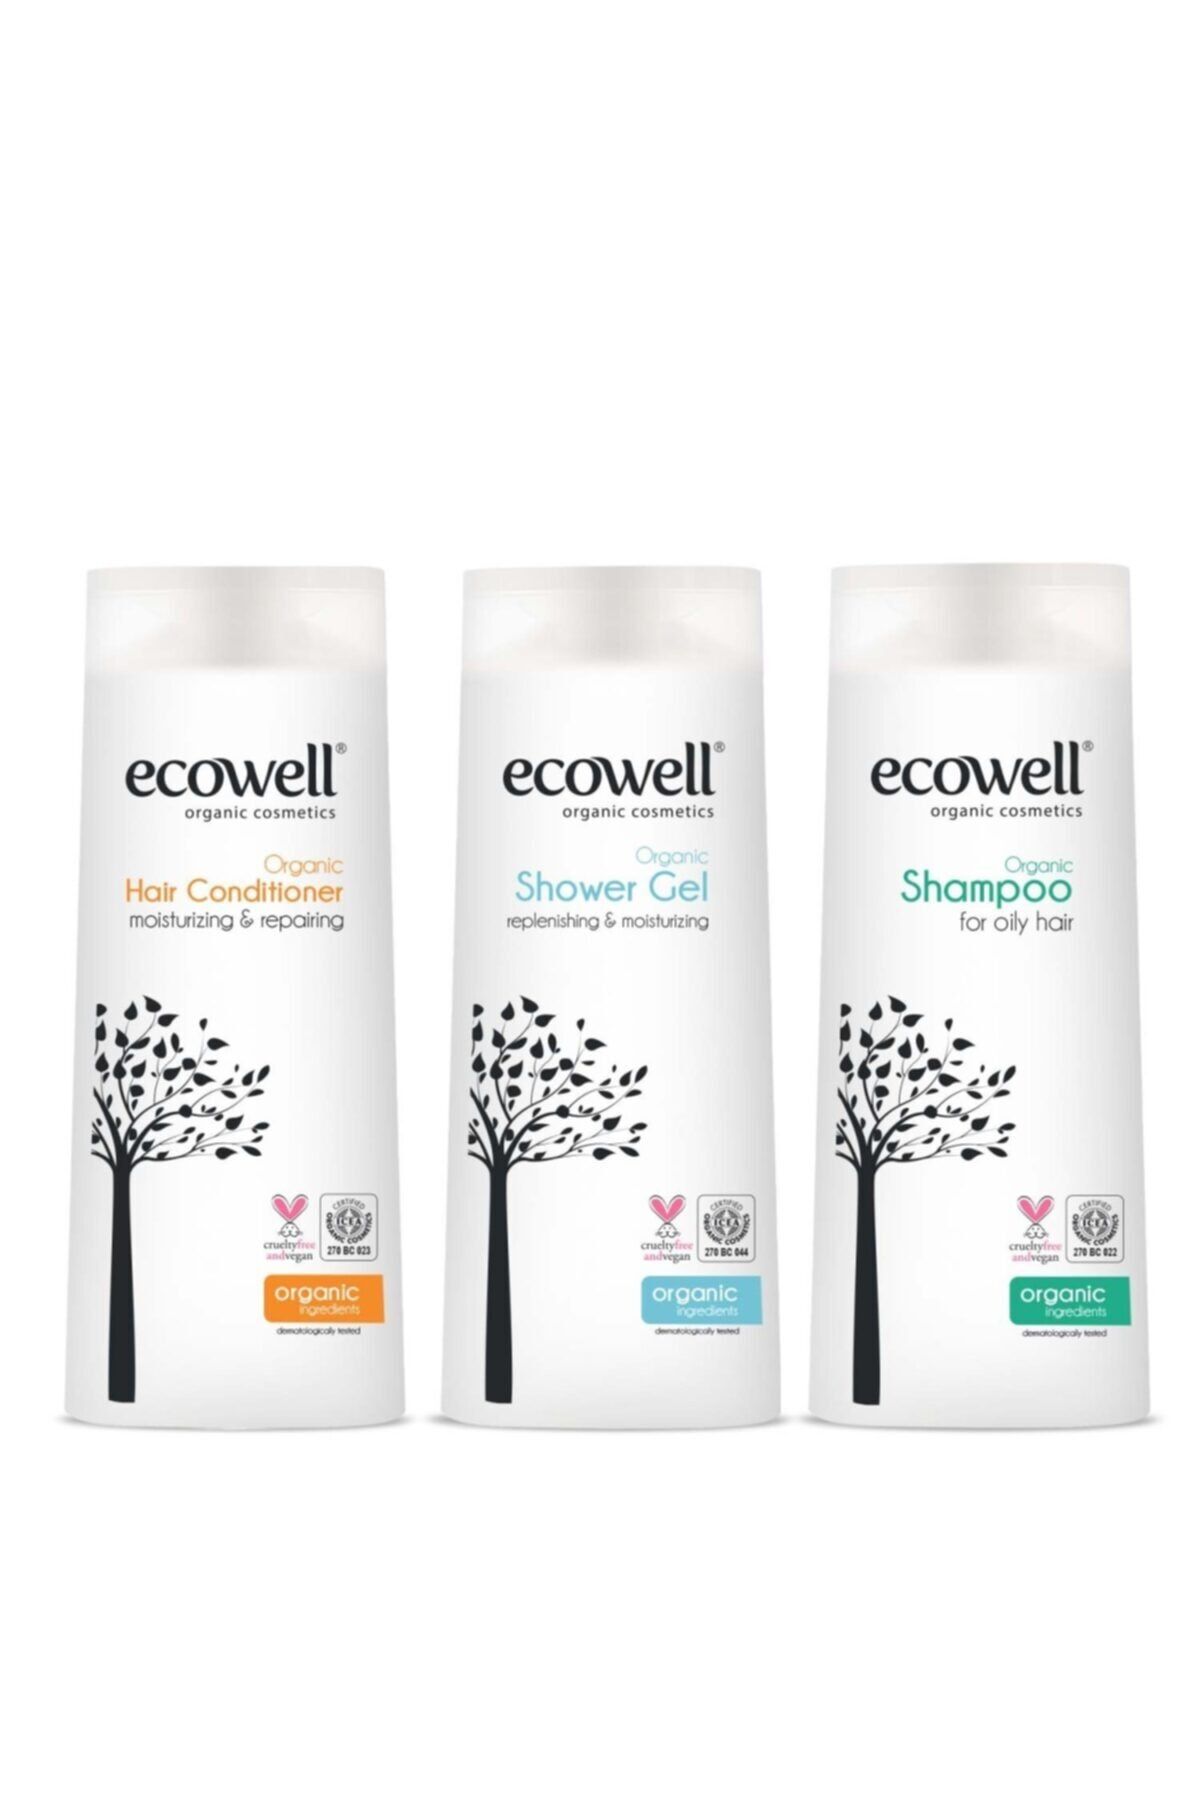 Ecowell Organik Duş Bakım Seti (4689)